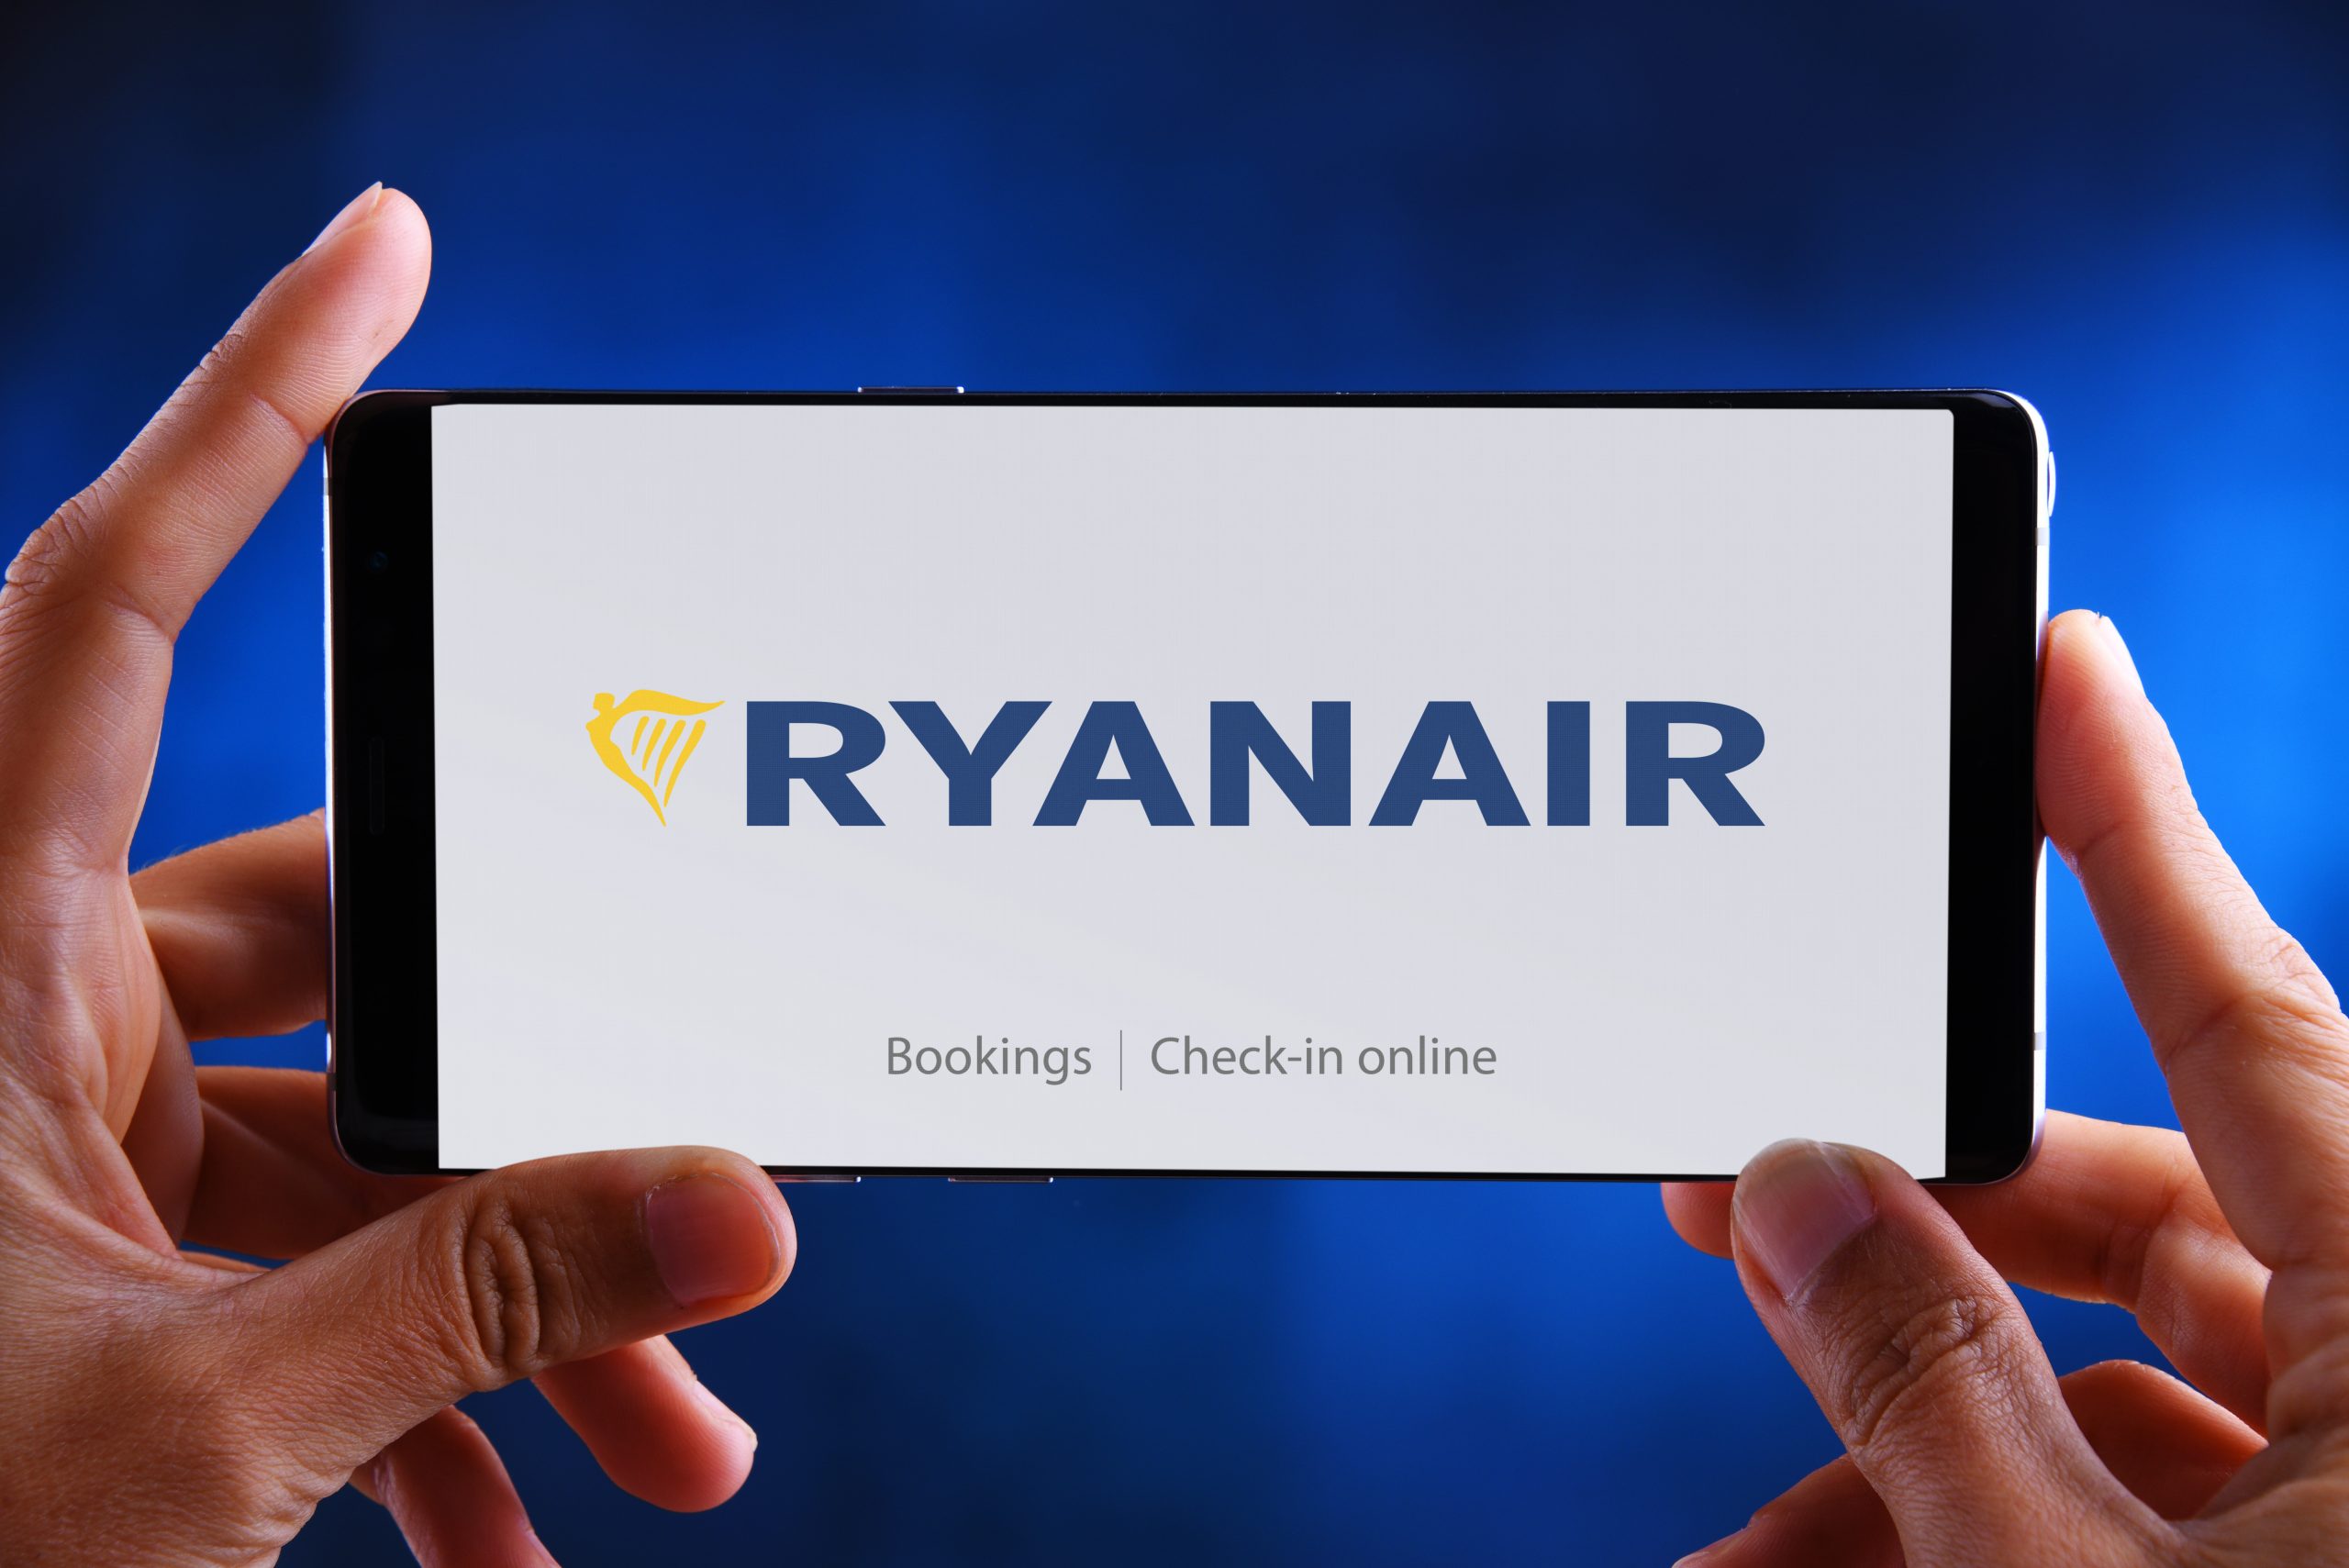 Manos sosteniendo un smartphone mostrando el logotipo de Ryanair